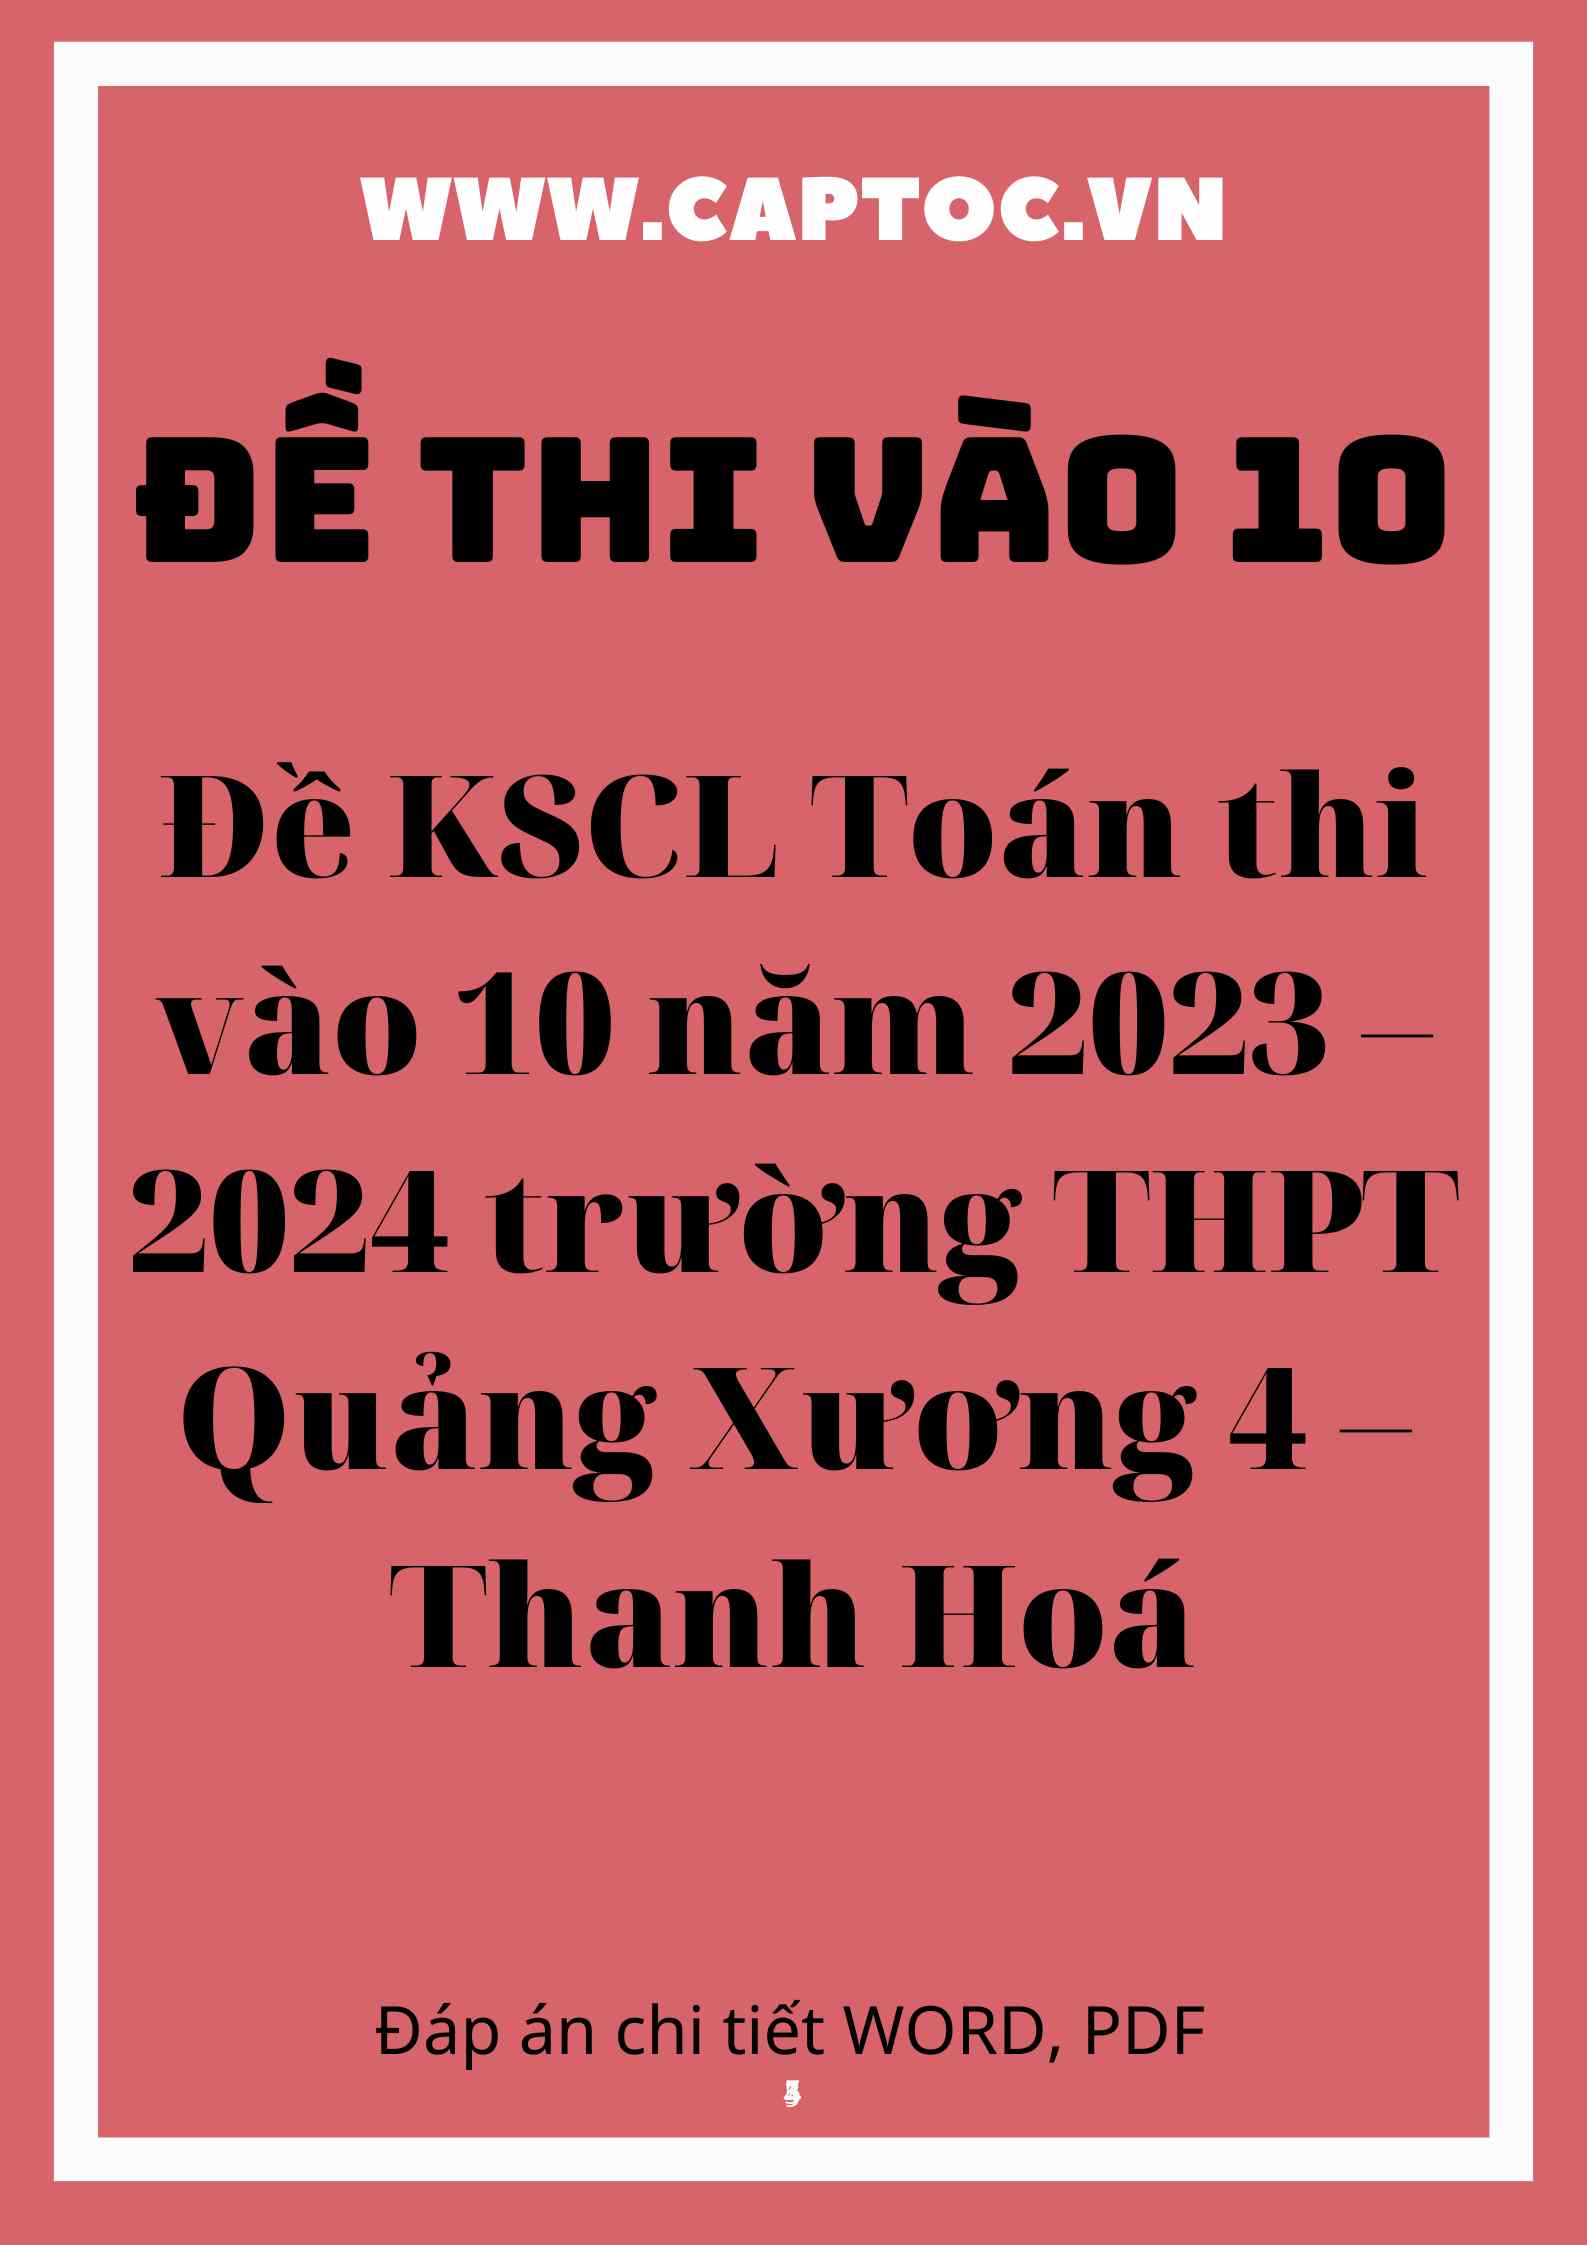 Đề KSCL Toán thi vào 10 năm 2023 – 2024 trường THPT Quảng Xương 4 – Thanh Hoá